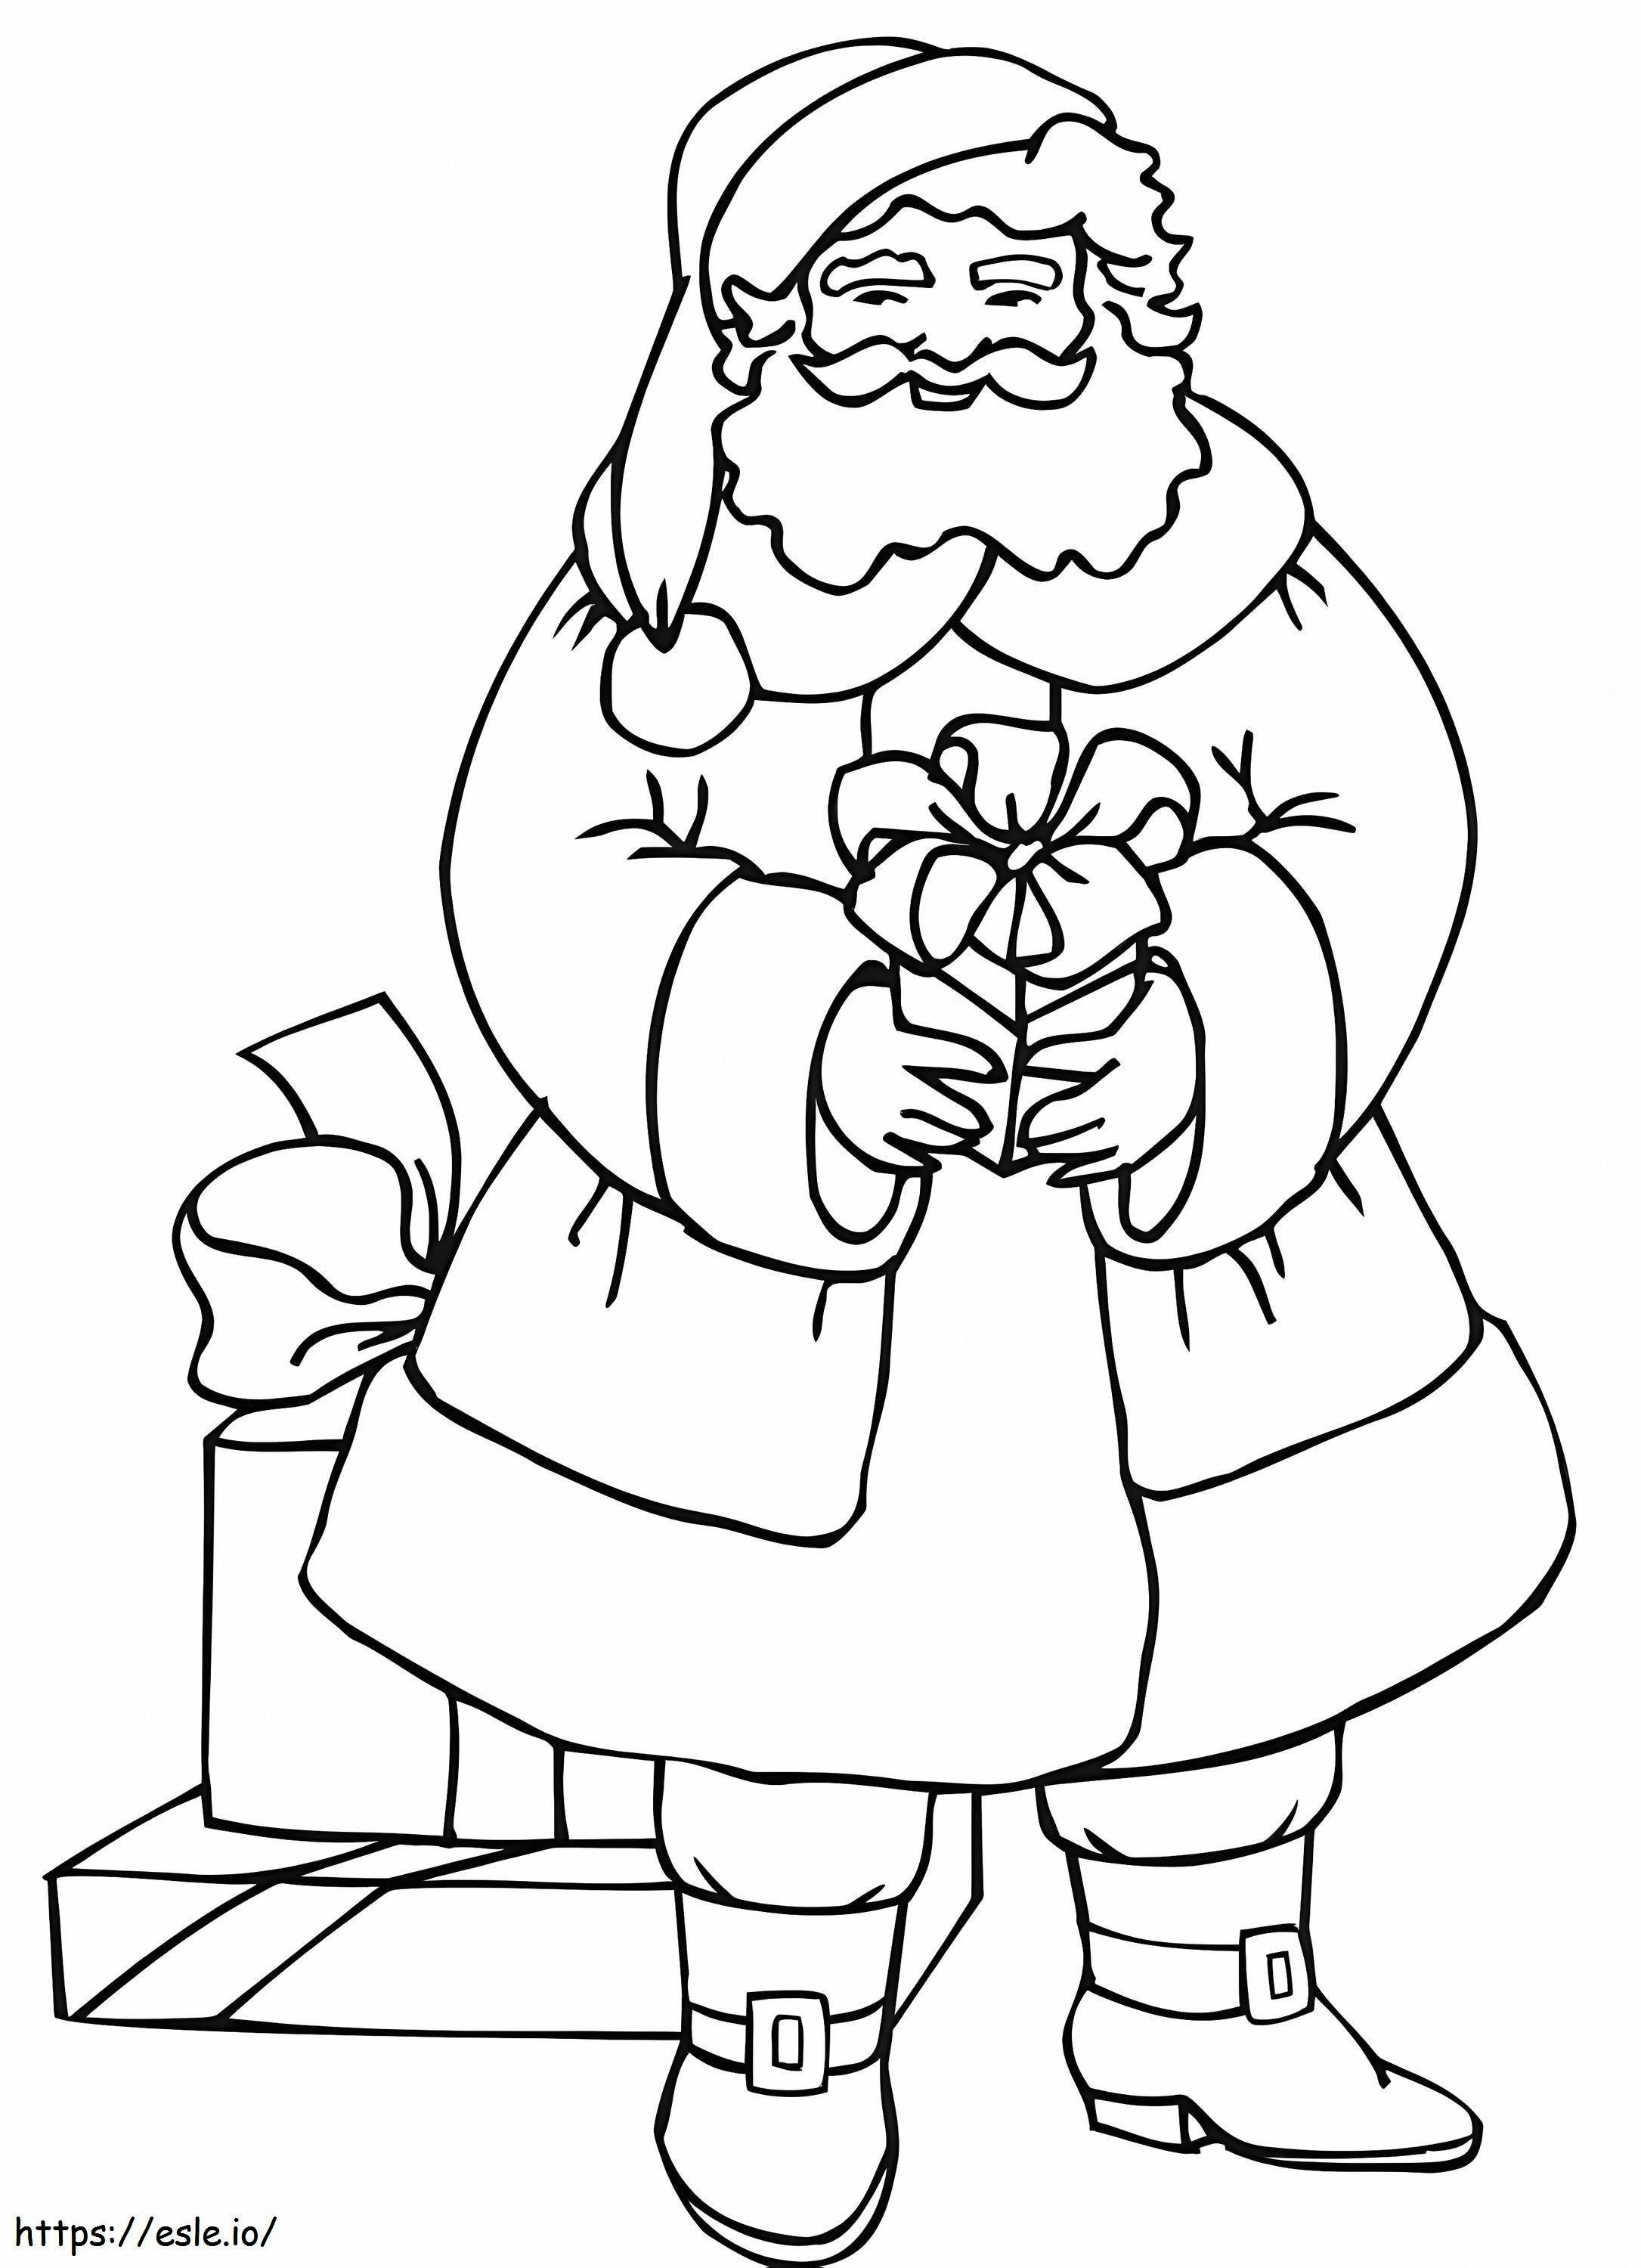 Santa Bringing Presents coloring page